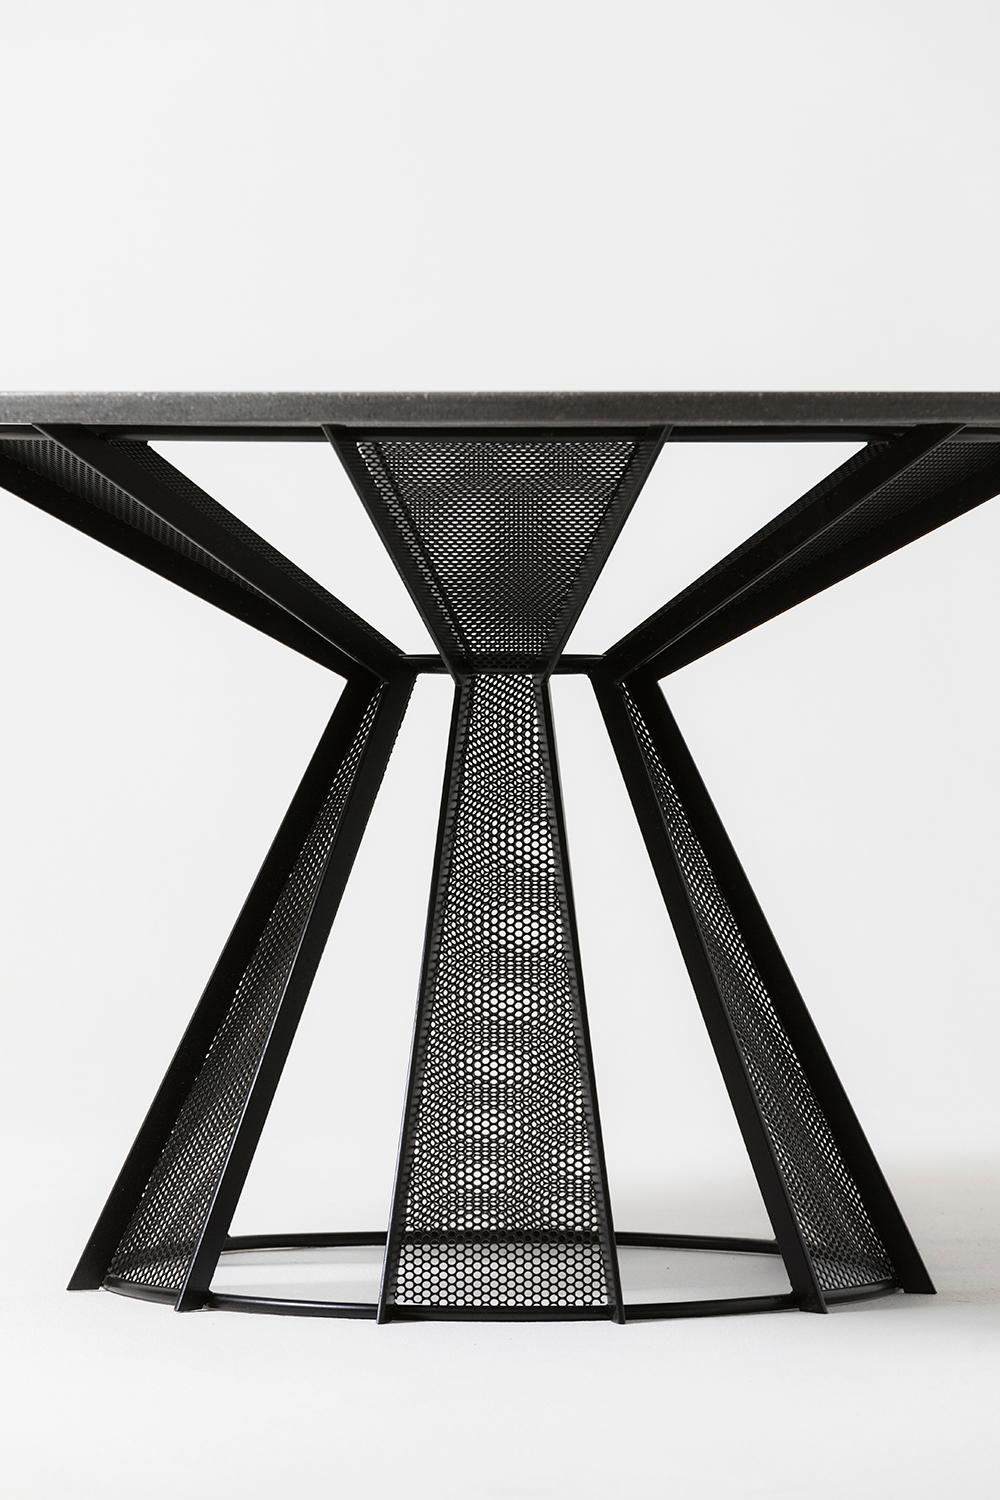 Ein schlichtes und klassisches Design, das französischen Landhausstil mit raffinierter Industriekultur verbindet. Tischplatte aus Beton mit pulverbeschichtetem Stahlgestell. Für den Innen- und Außenbereich geeignet.

Abgebildet in 60